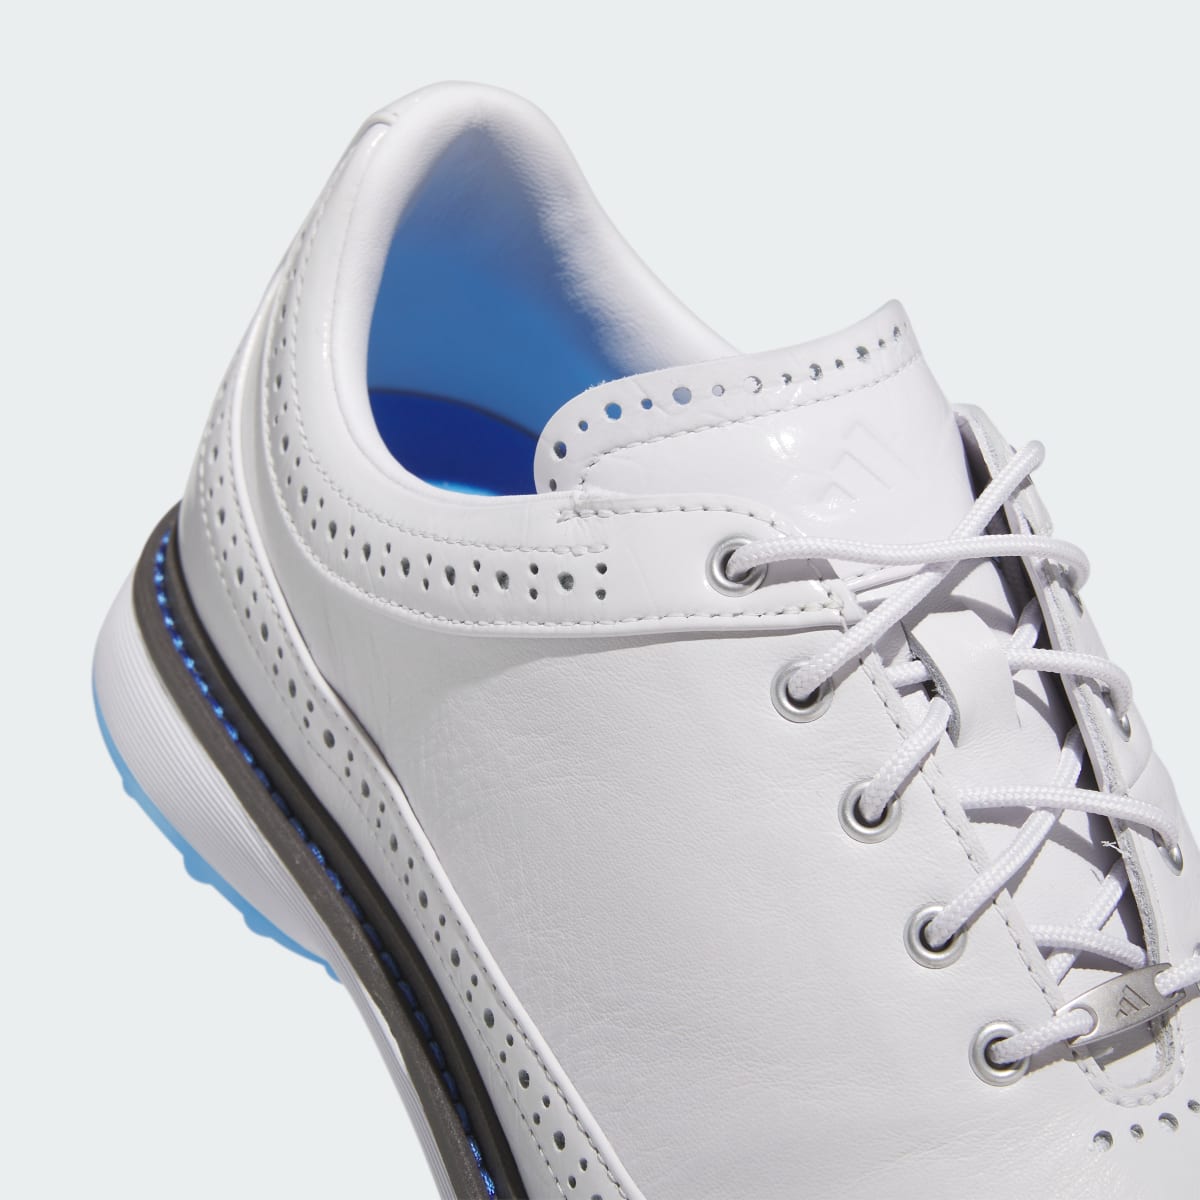 Adidas Modern Classic 80 Spikeless Golf Shoes. 9